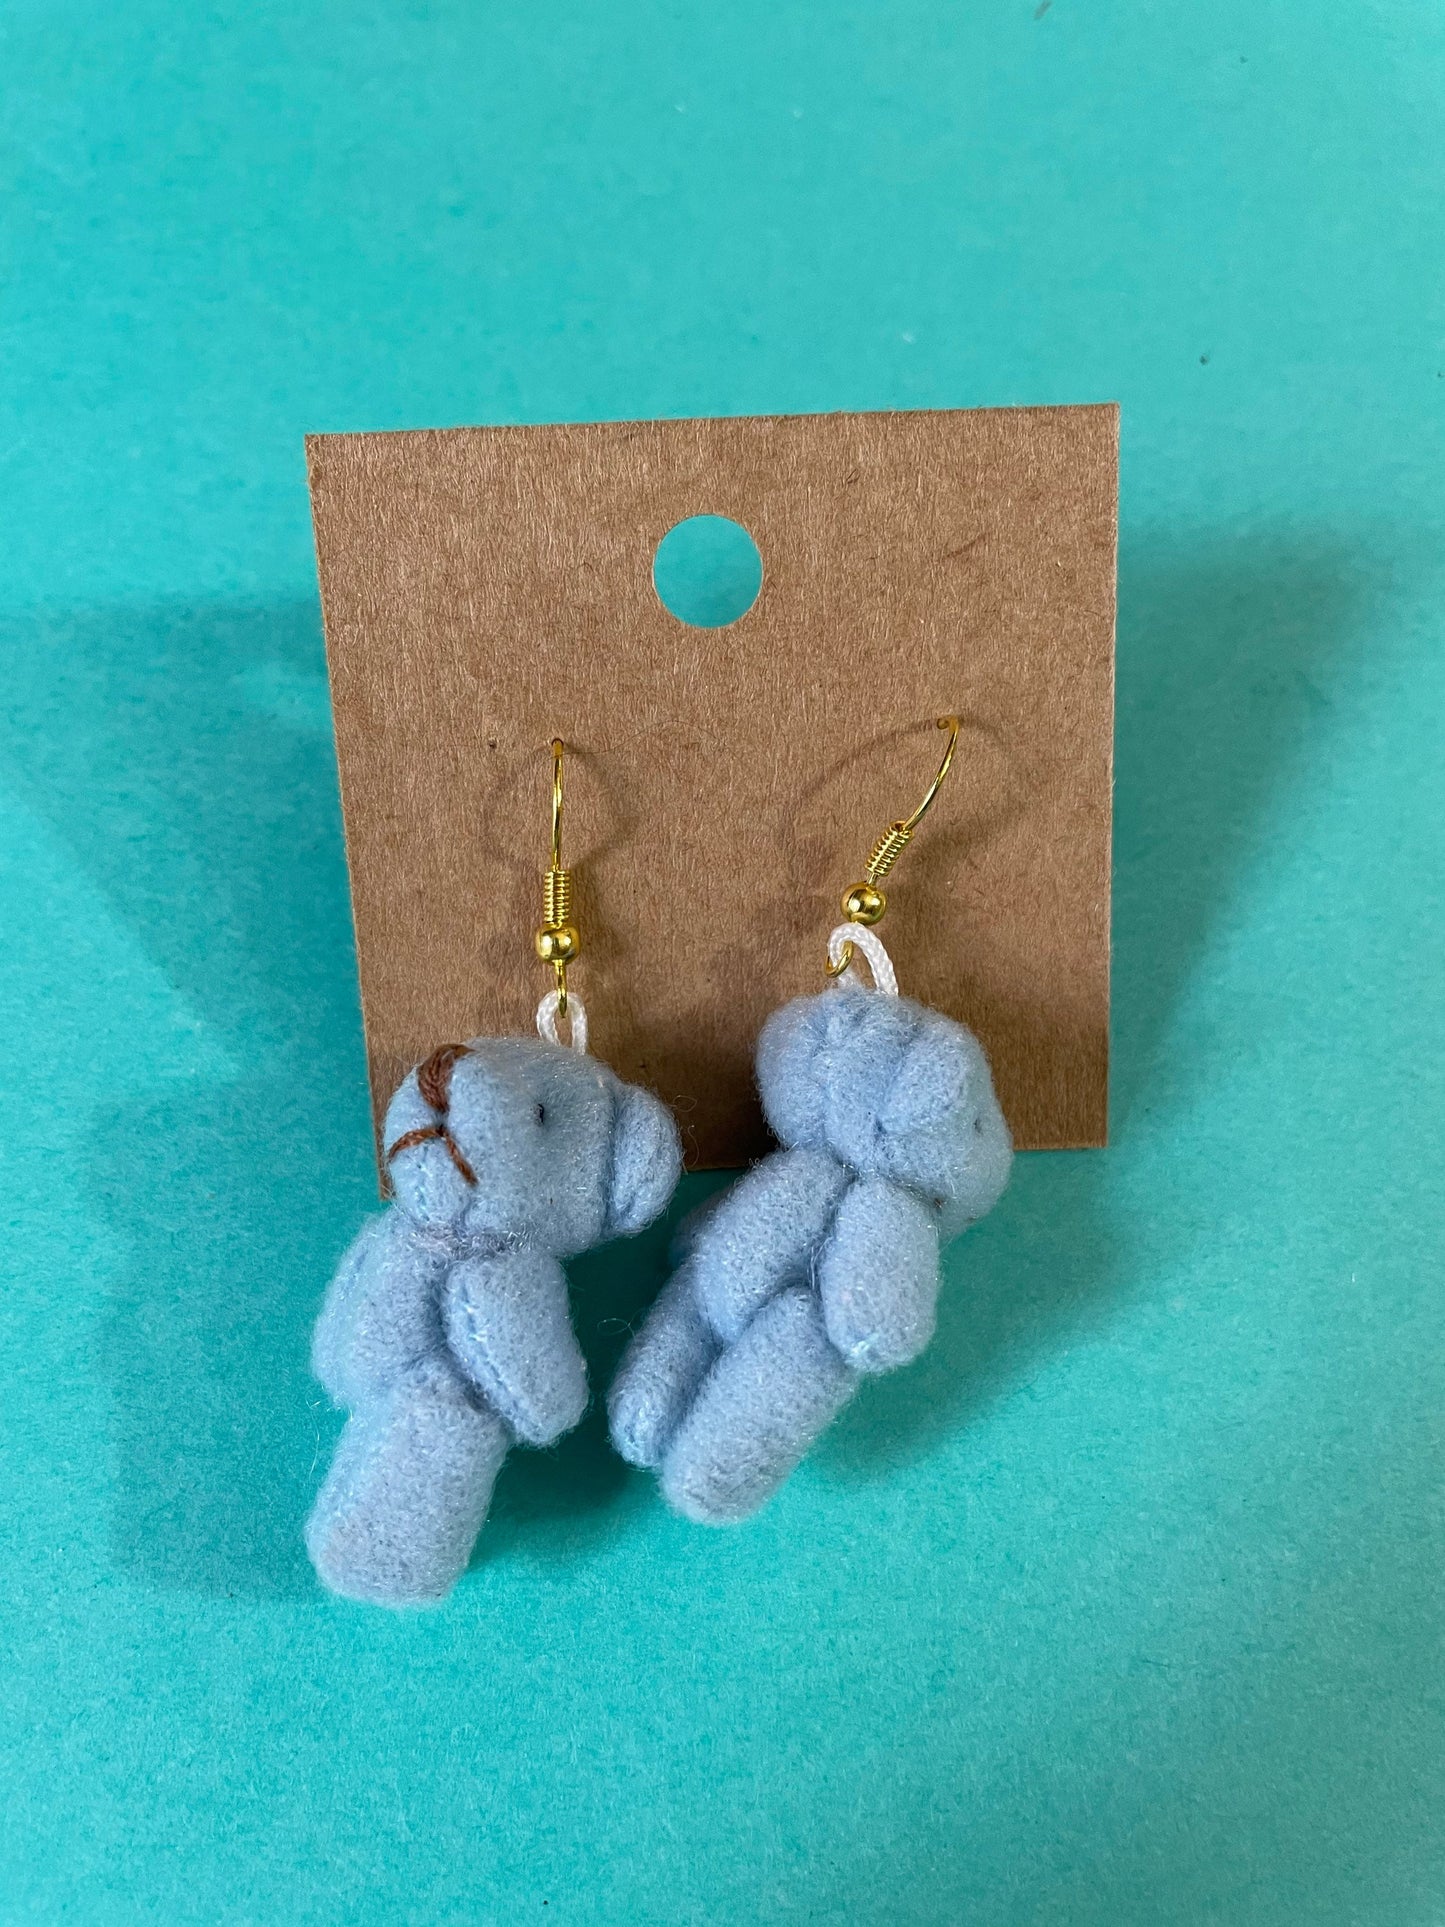 Sweet Teddy Bear earrings dangle earrings blue, brown, lavender, tan and pink earrings